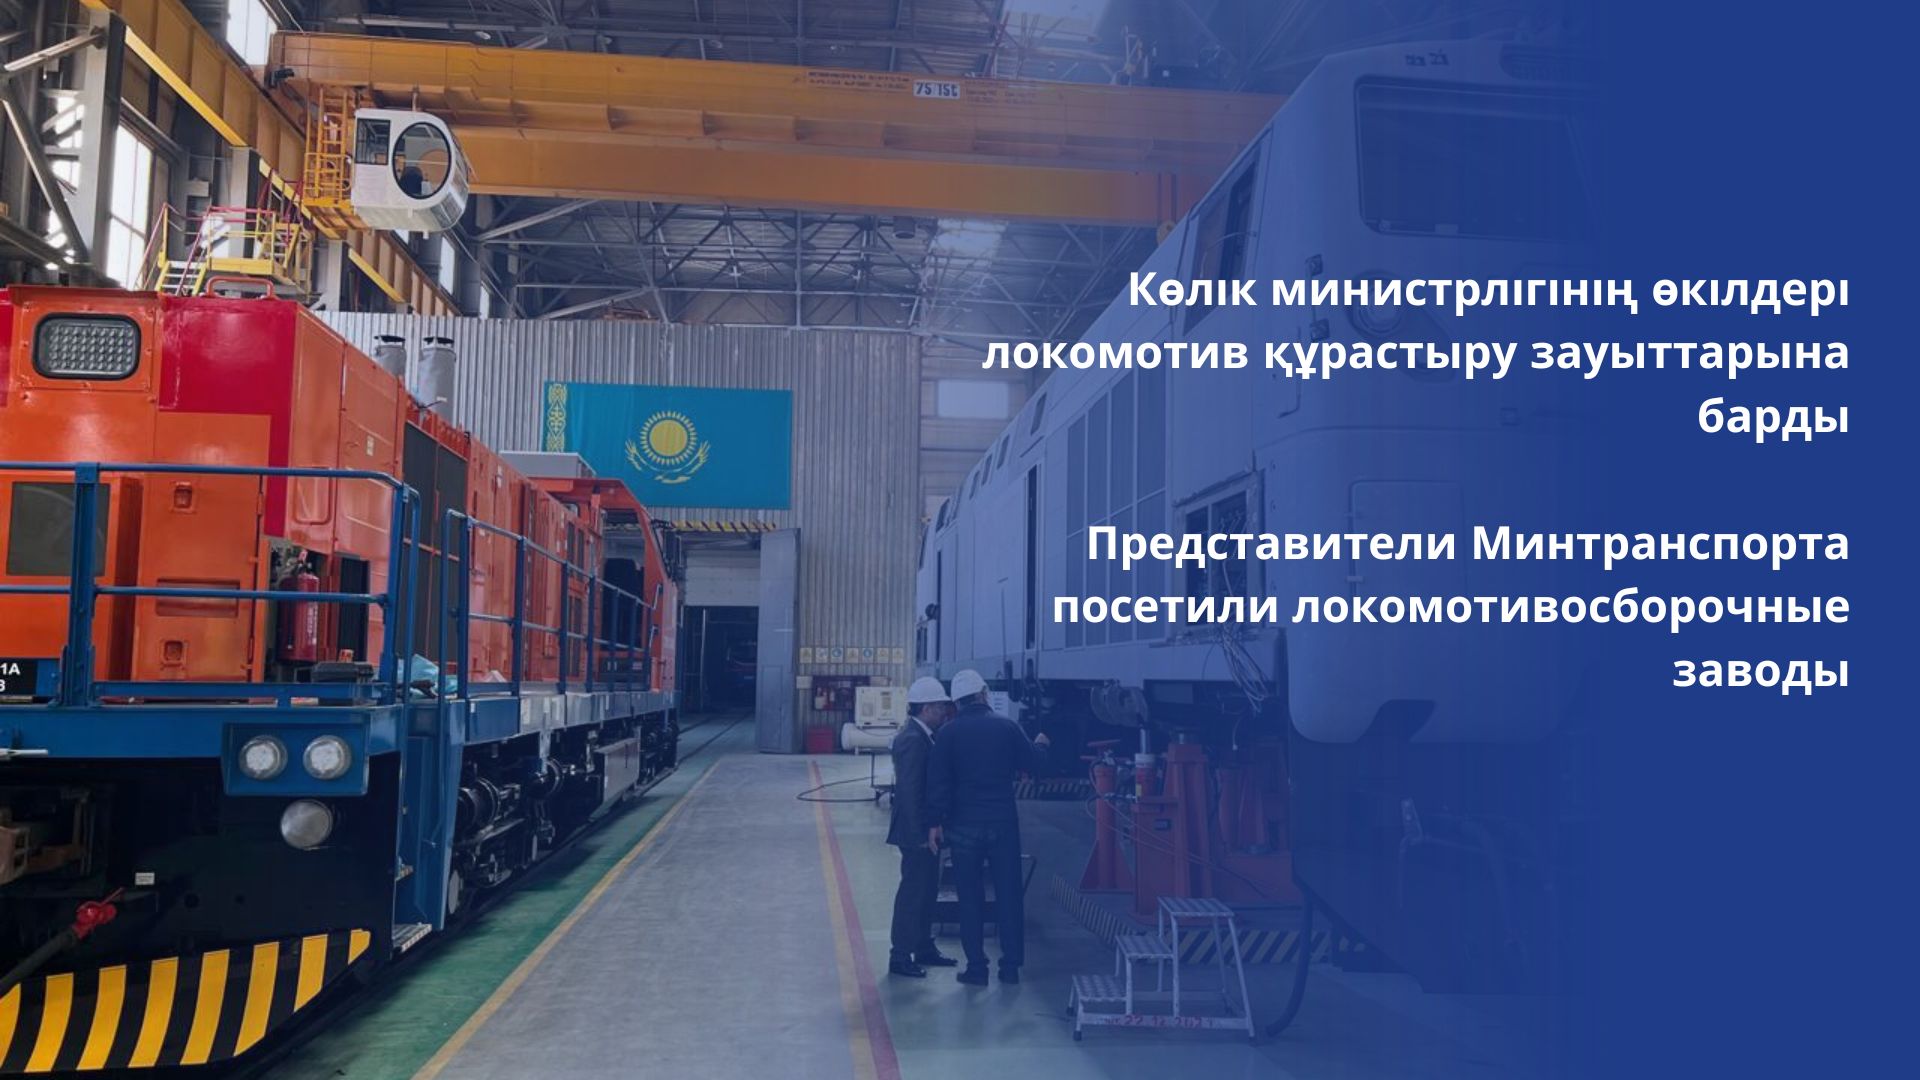 Представители Минтранспорта посетили локомотивосборочные заводы